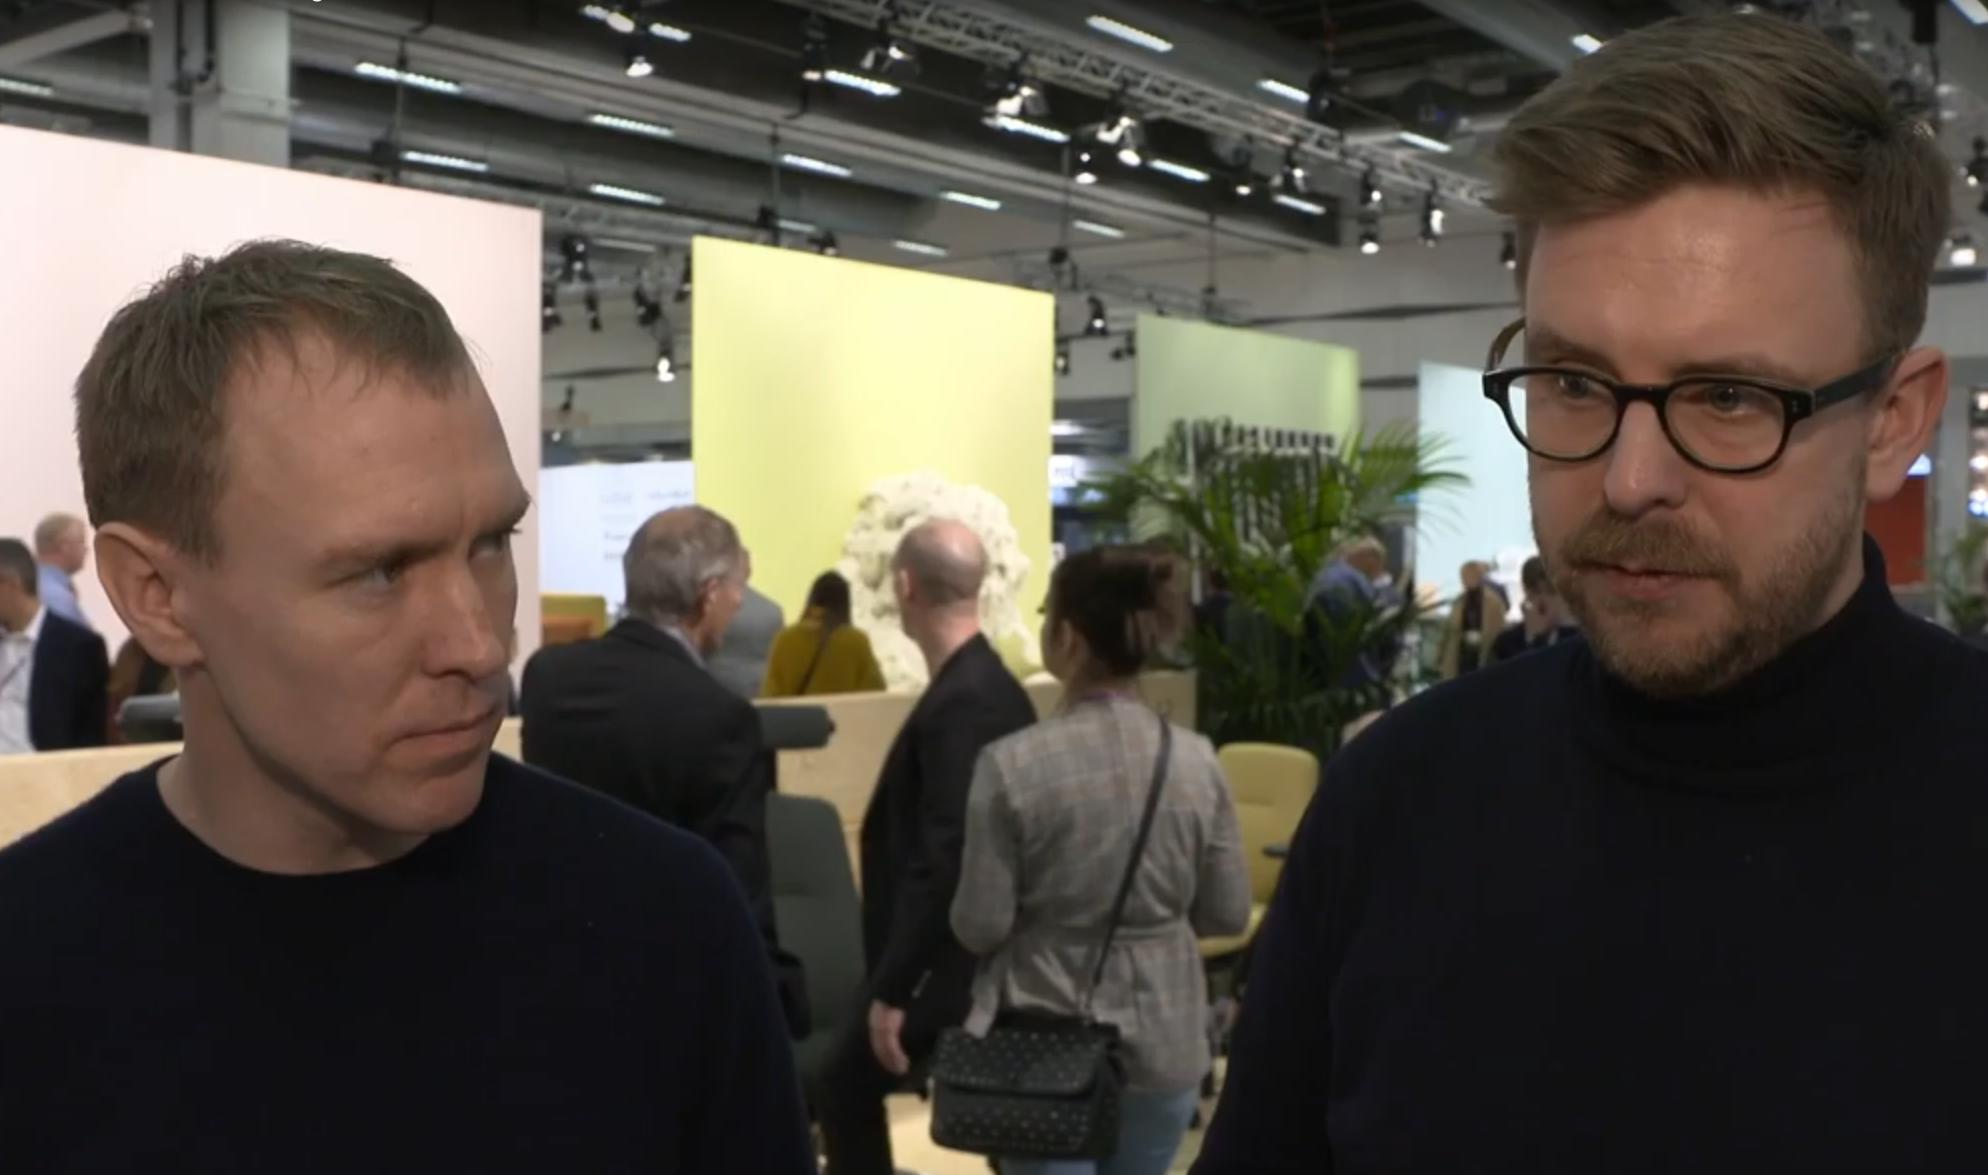 Øystein Austad and Jonas Ravlo Stokke at SFF 2019